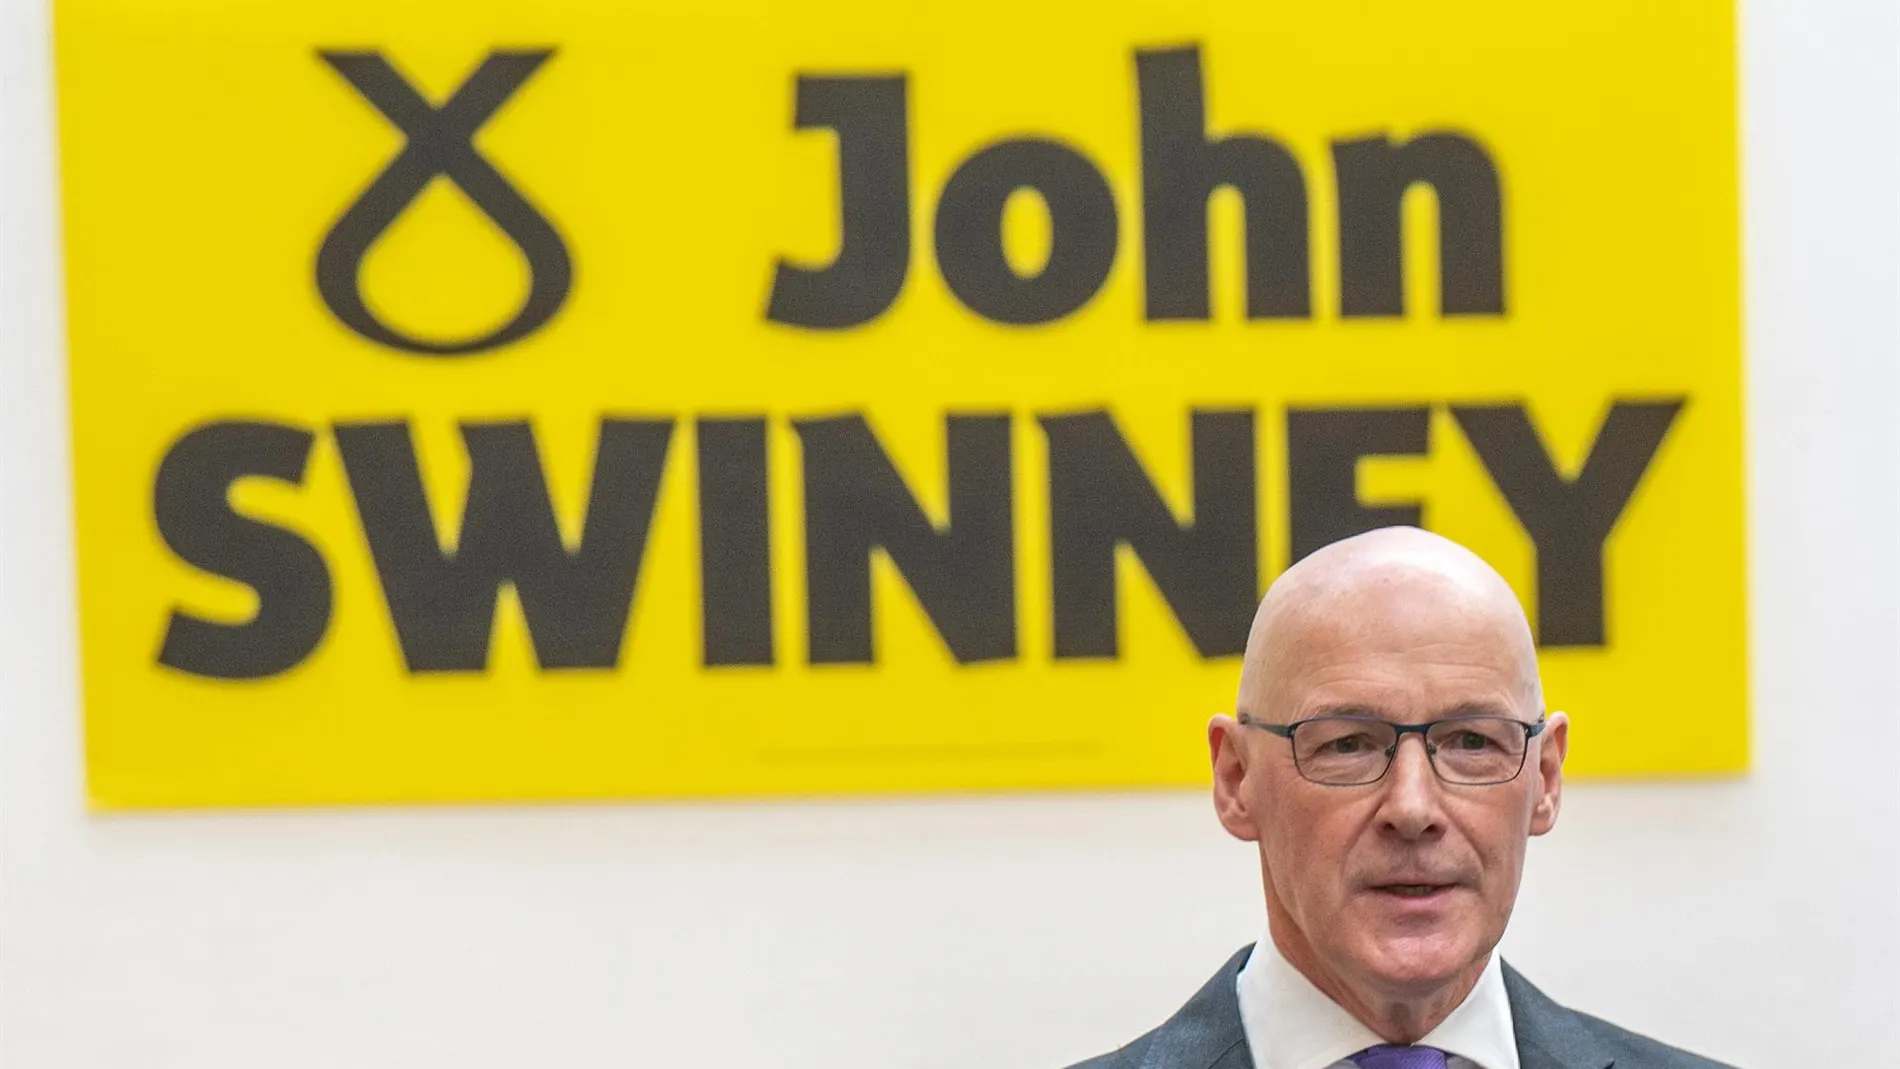 R.Unido.- John Swinney se hace con el liderazgo del SNP y sucederá a Humza Yousaf como ministro principal de Escocia